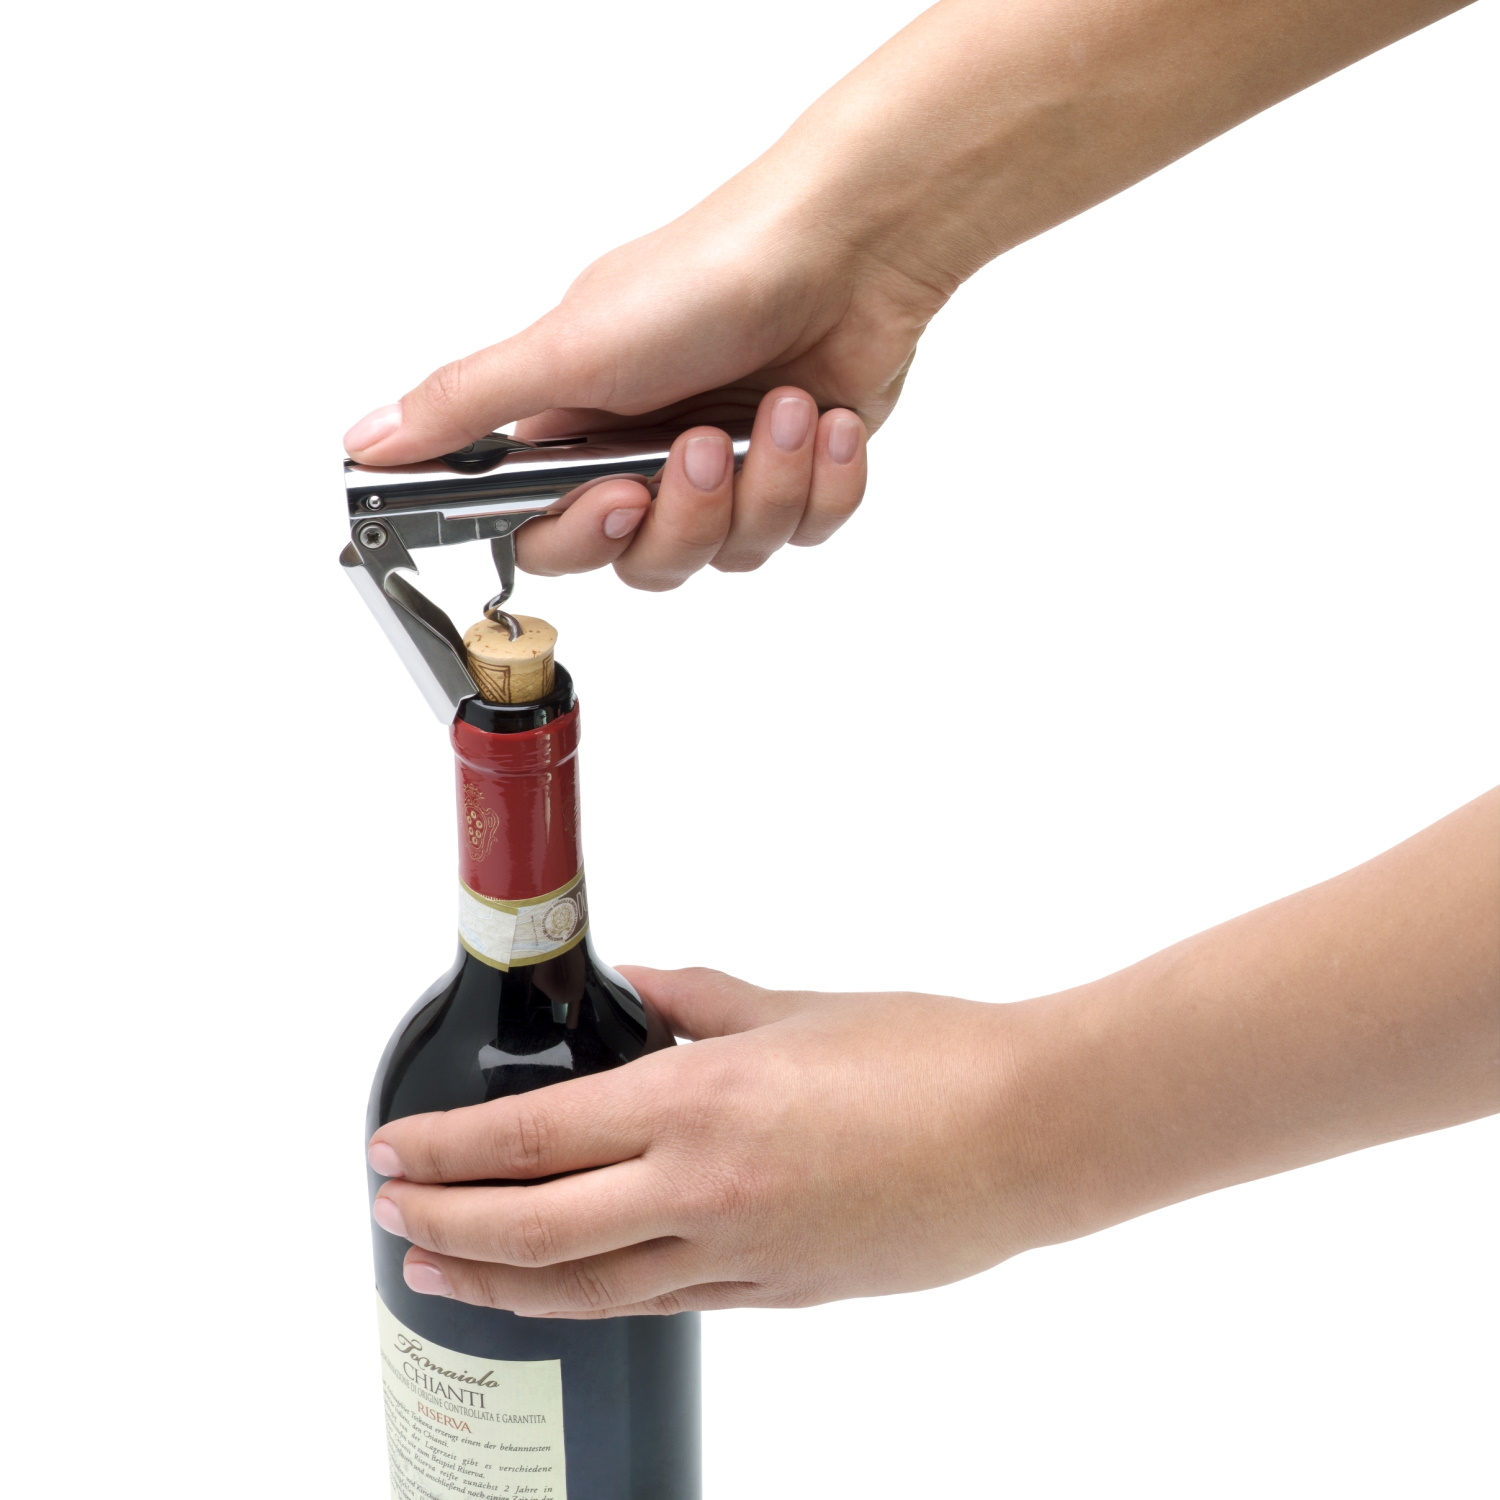 Как открыть вино без штопора - 10 быстрых способов